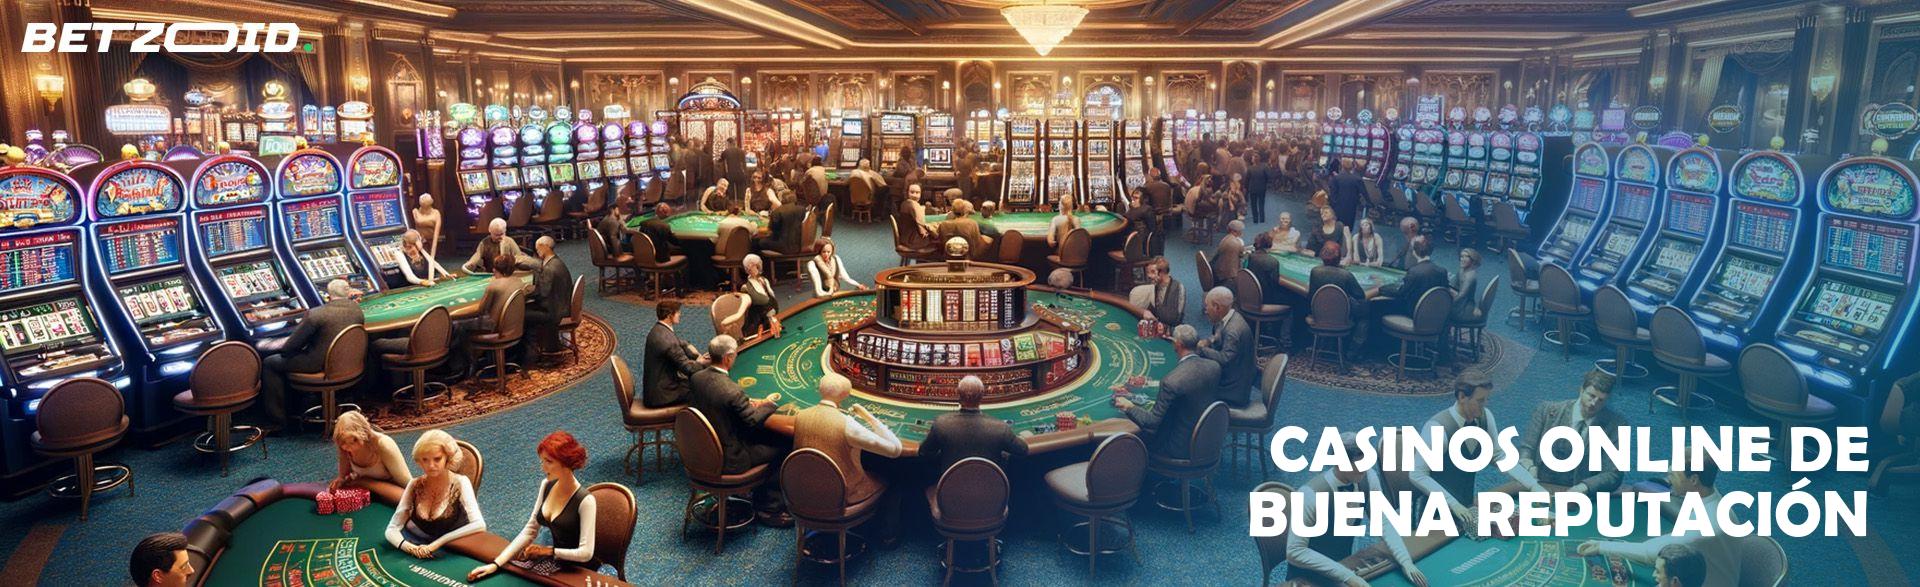 Casinos Online de Buena Reputación.